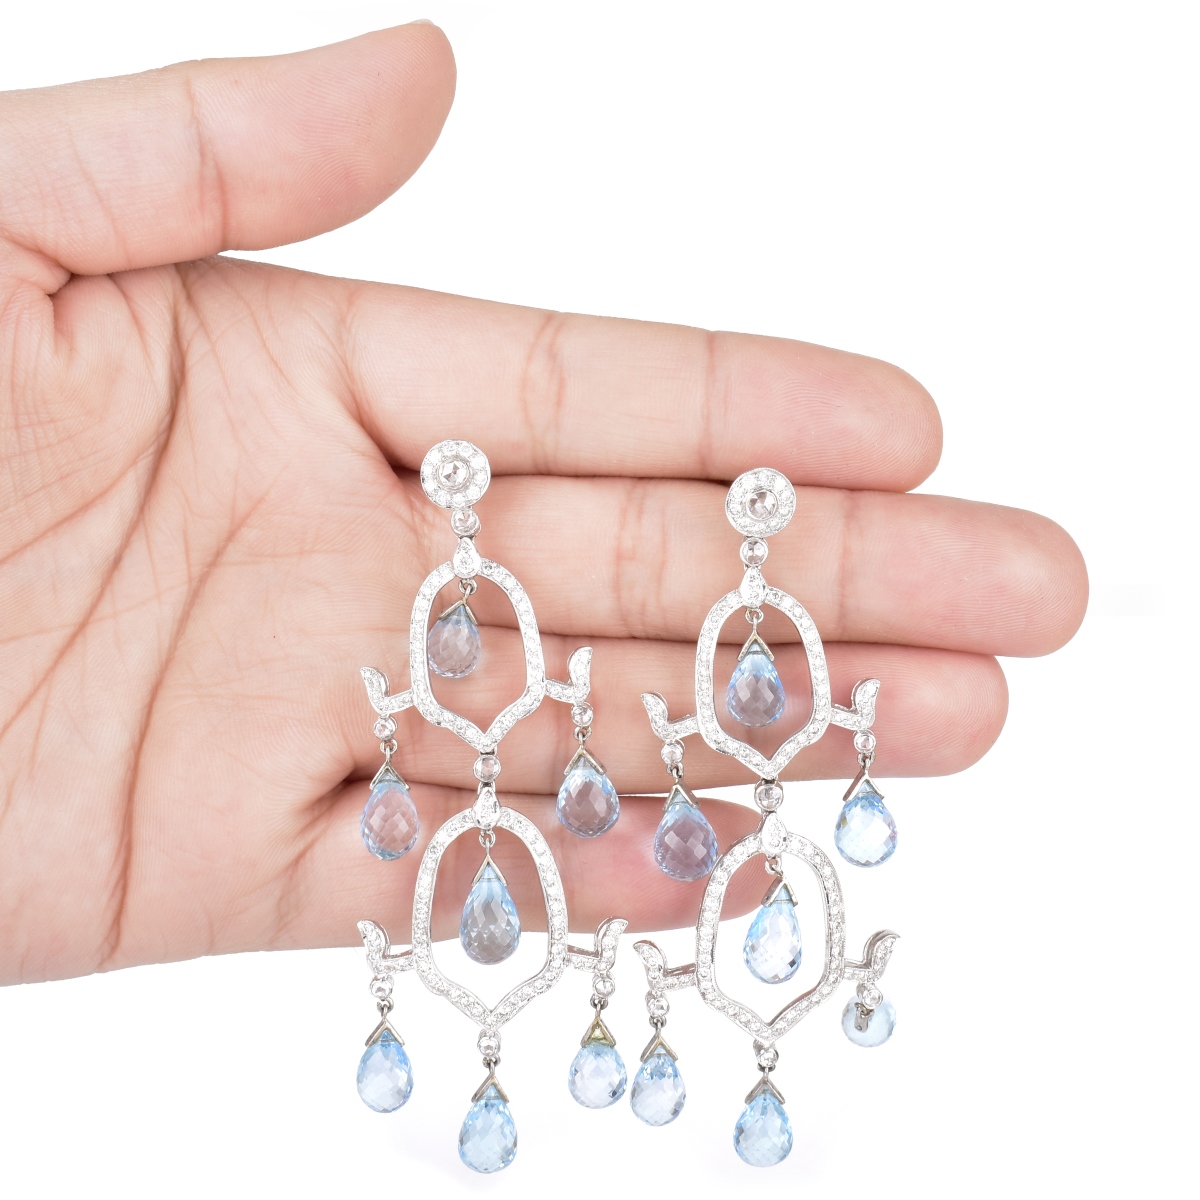 Blue Topaz, Diamond and 18K Gold Earrings